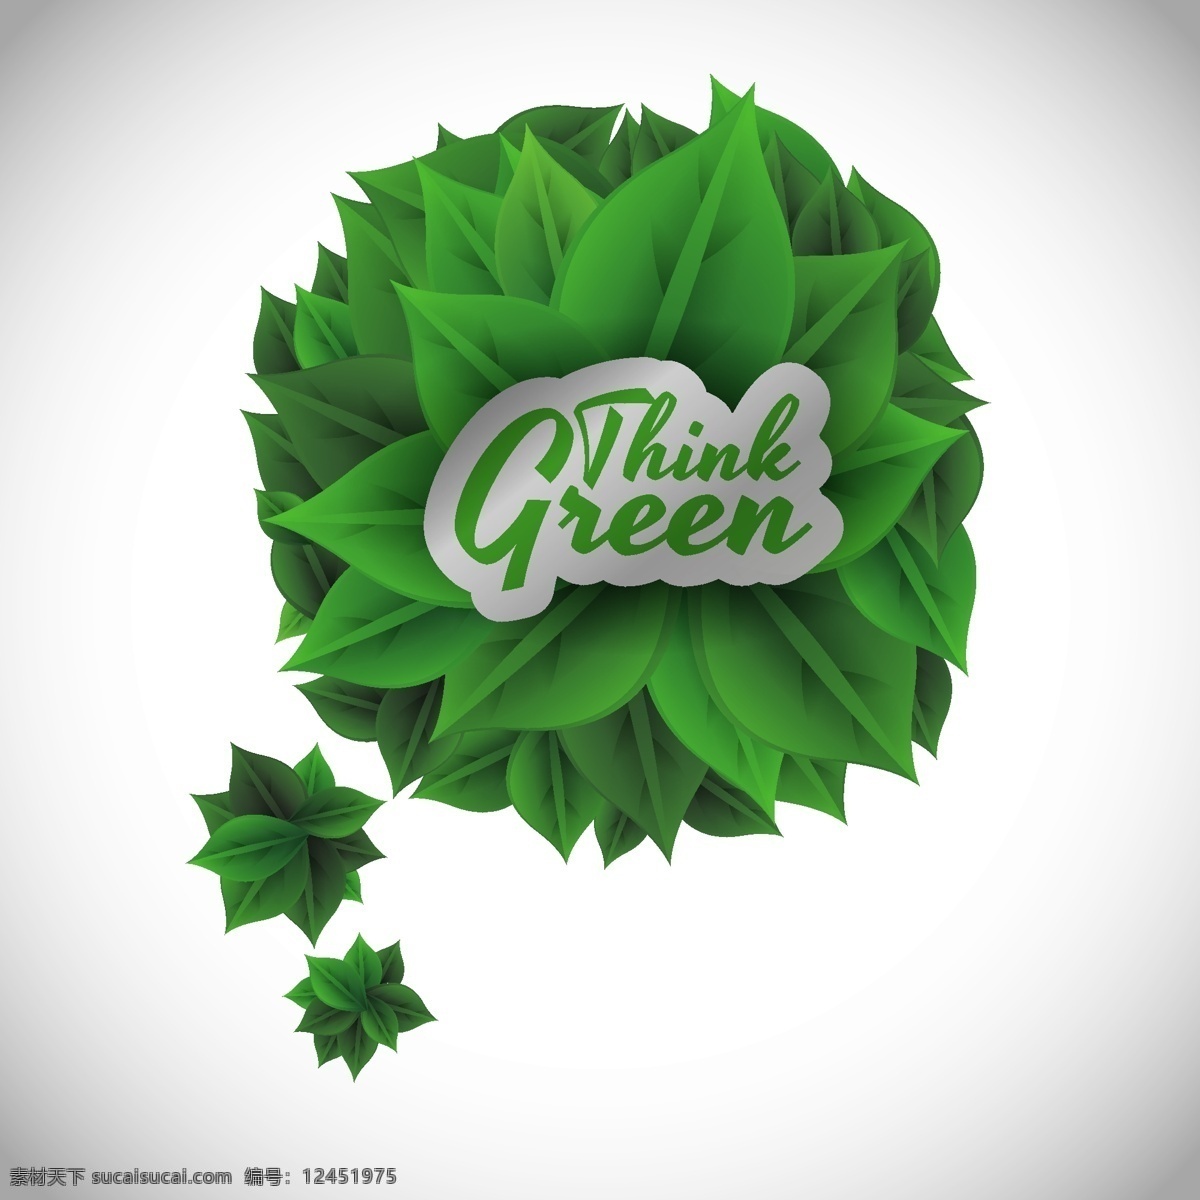 绿色环保 主题 背景 环保 绿色 绿叶 模板 曲线 树叶 线条 叶子 矢量 矢量图 其他矢量图